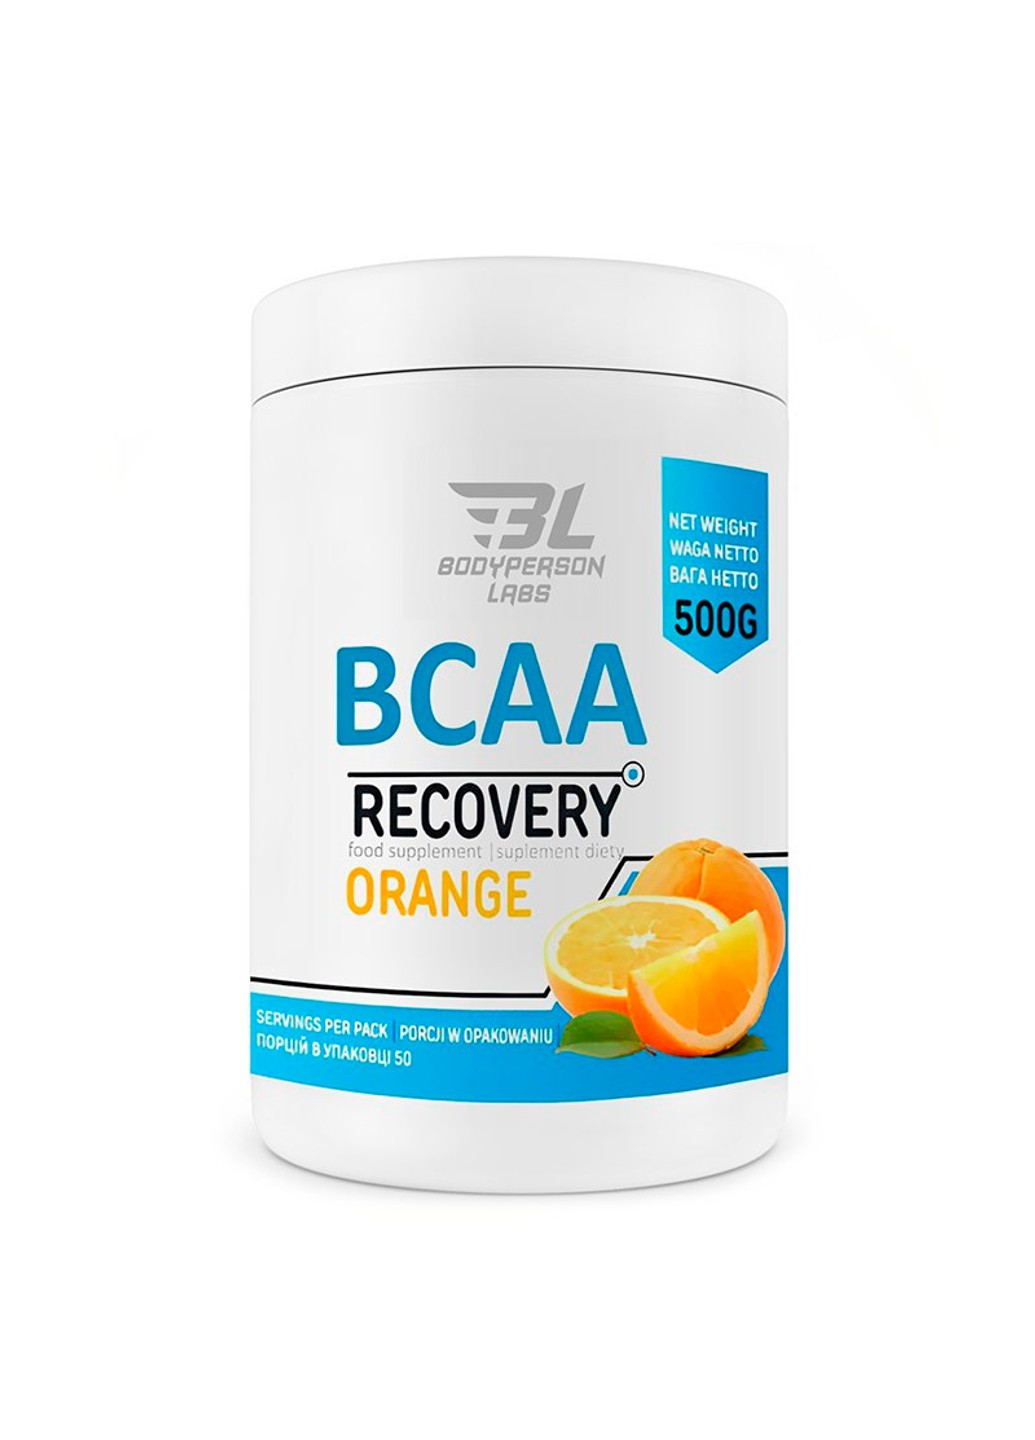 Комплекс Аминокислот ВСАА для Восстановления BCAA Recovery - 500г Bodyperson Labs (269462200)